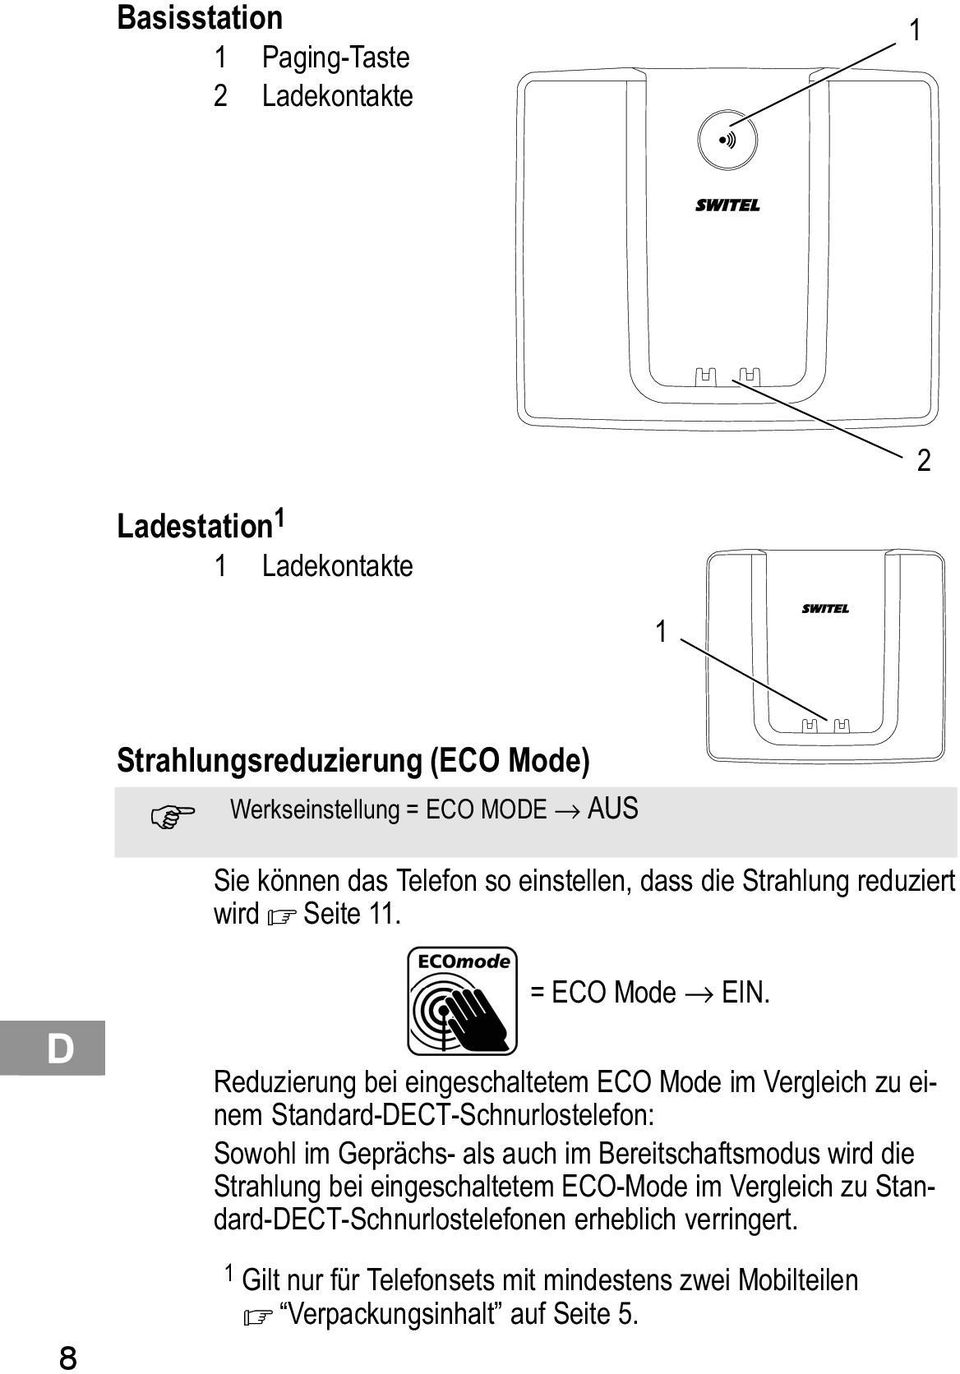 Reduzierung bei eingeschaltetem ECO Mode im Vergleich zu einem Standard DECT Schnurlostelefon: Sowohl im Geprächs als auch im Bereitschaftsmodus wird